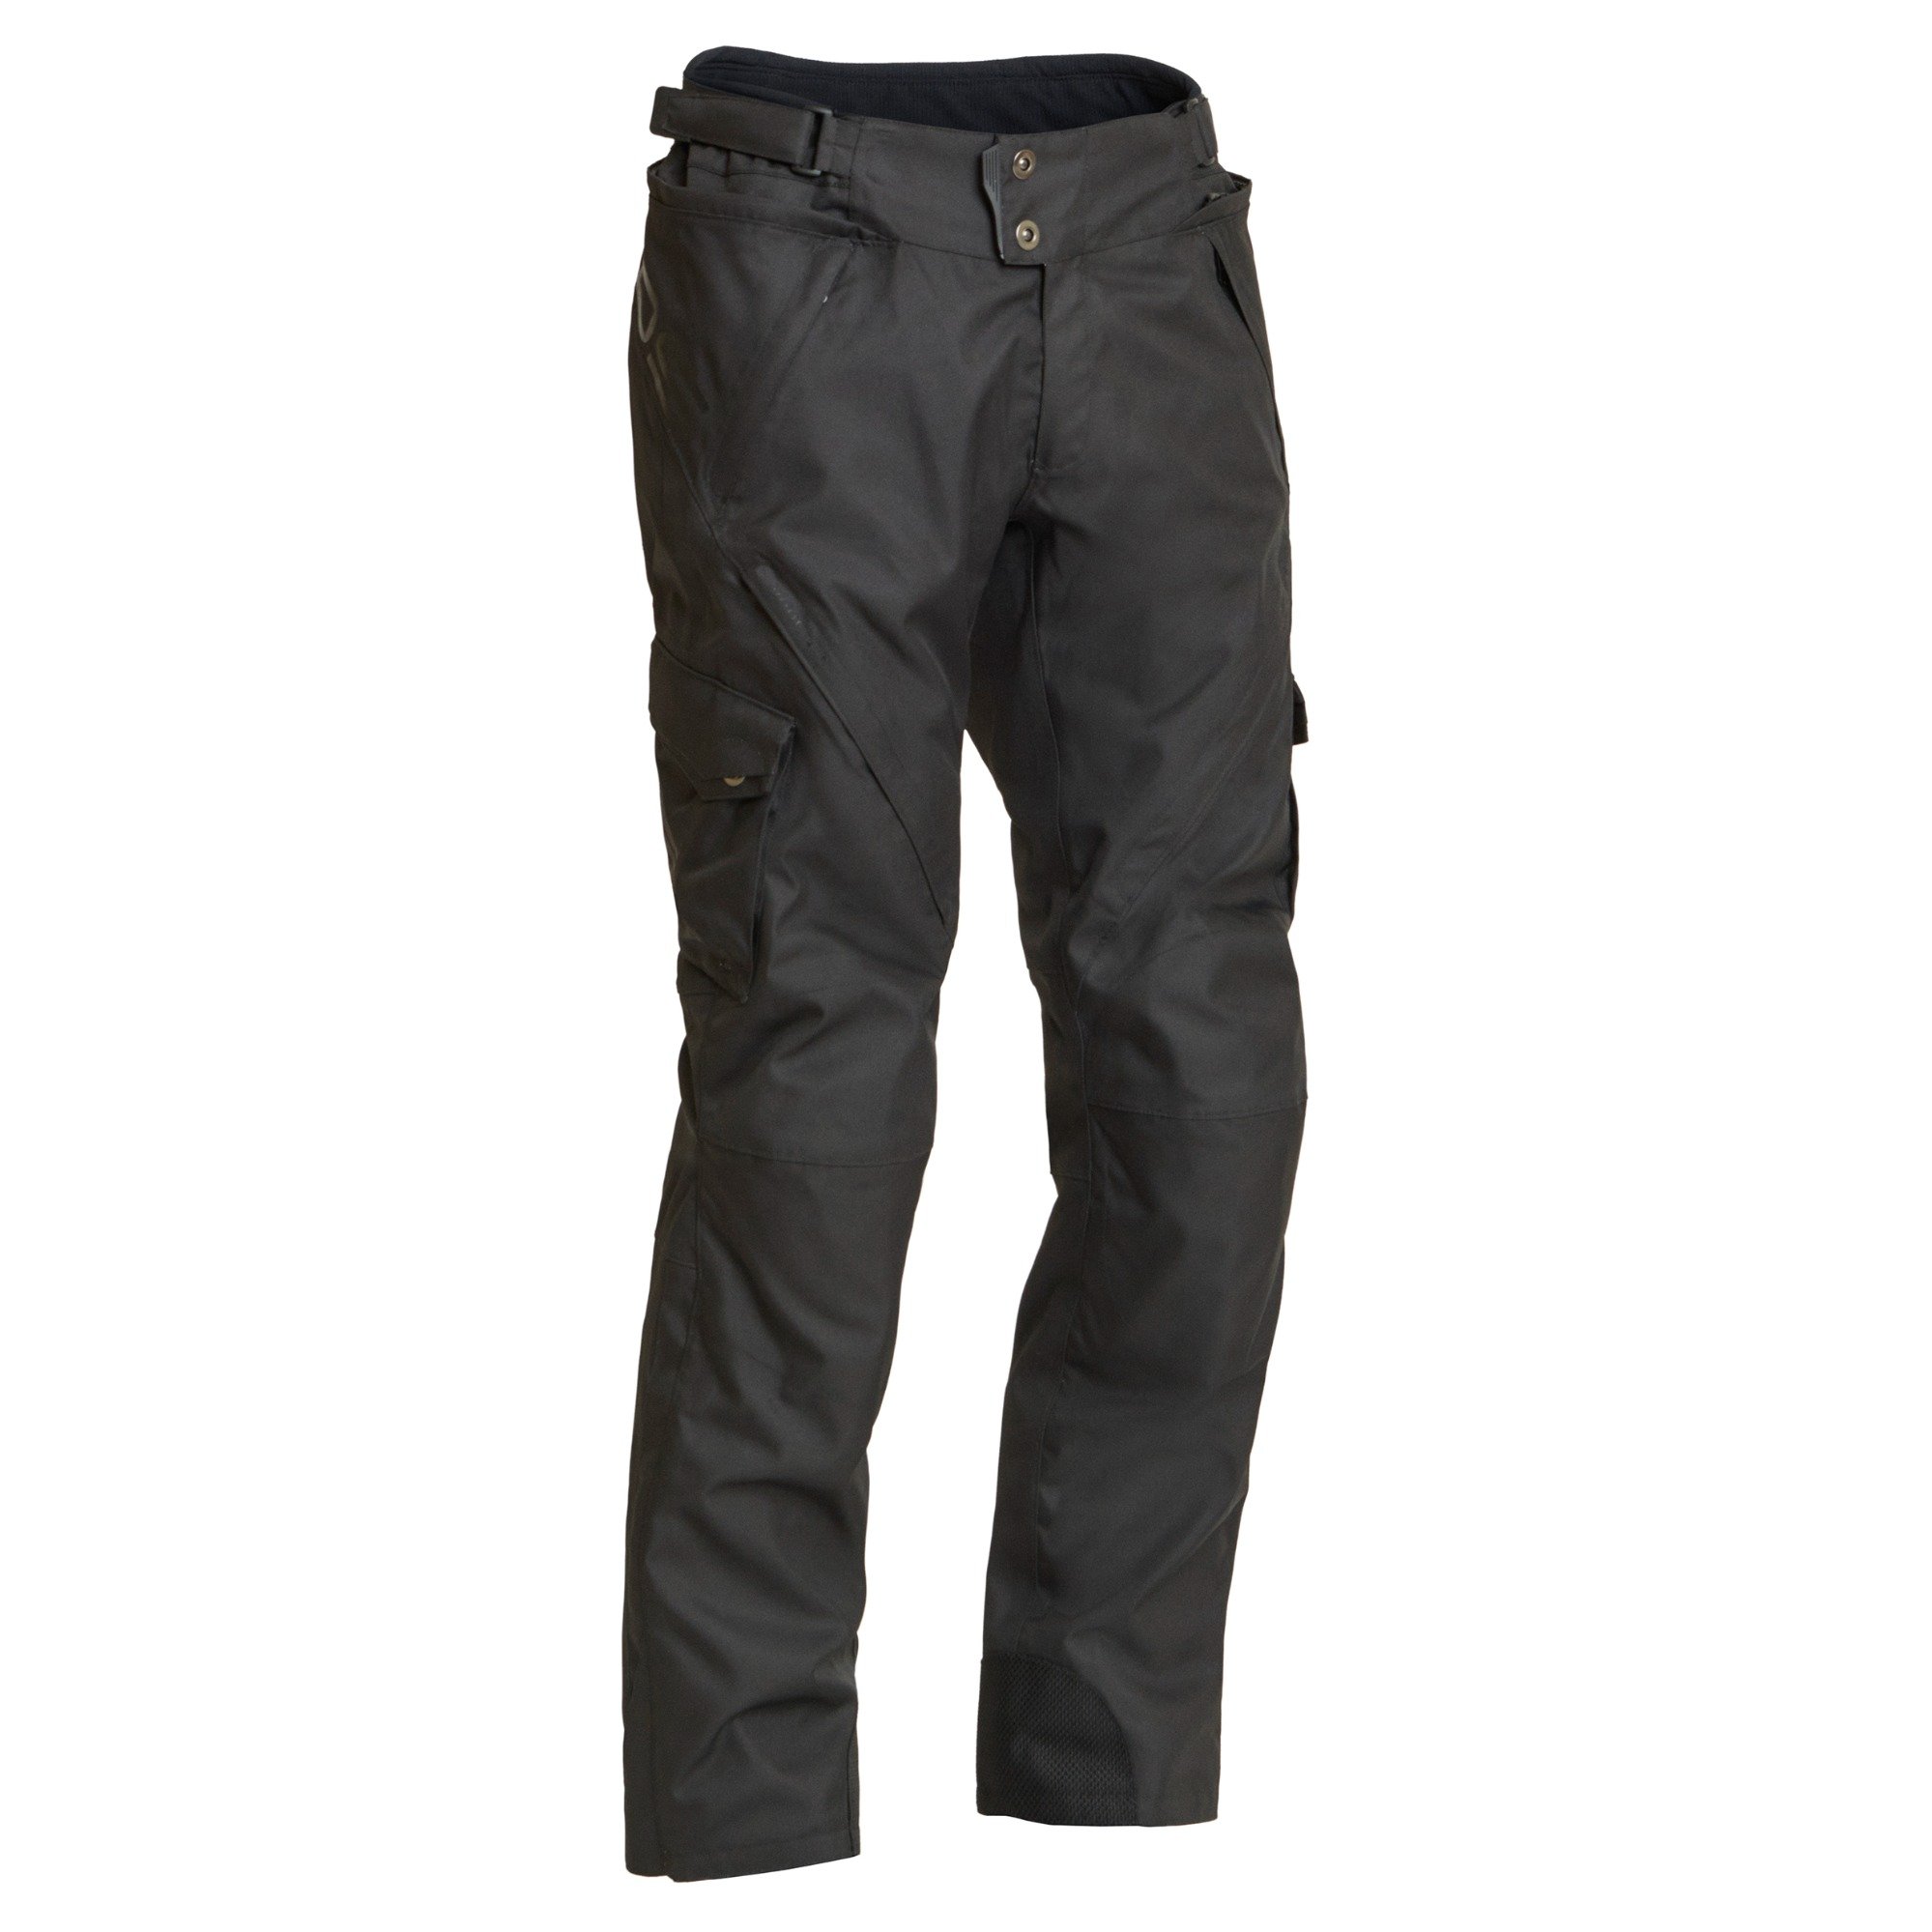 Image of Lindstrands Berga Black Textile Pants Size 48 EN